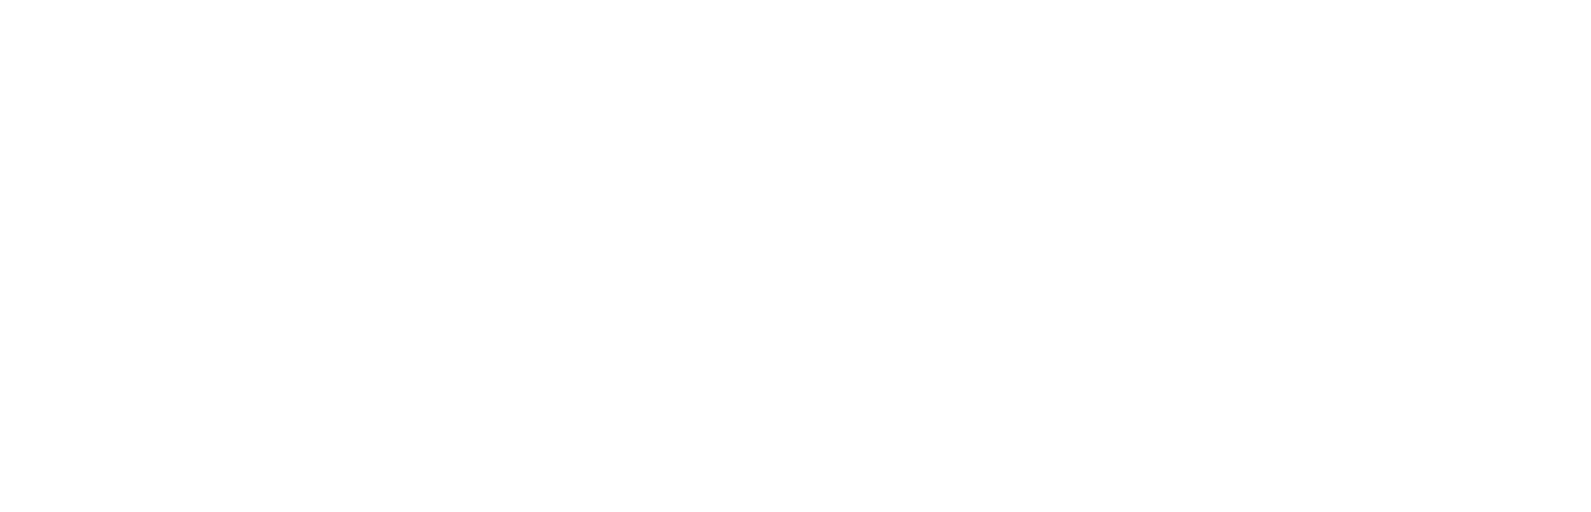 Nordic-Modding Team